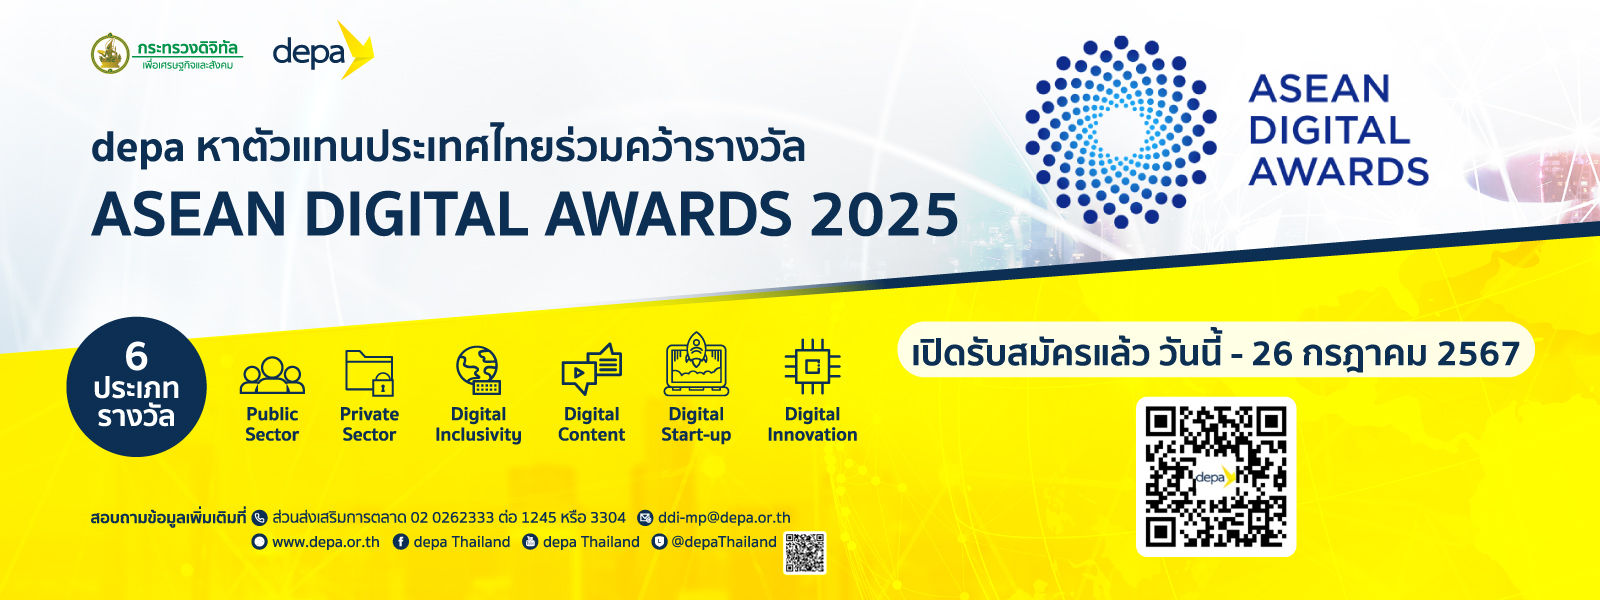 ประชาสัมพันธ์การส่งผลงานเข้าประกวดในโครงการ “ASEAN Digital Awards 2025” เวทีการแข่งขันระดับ ASEAN